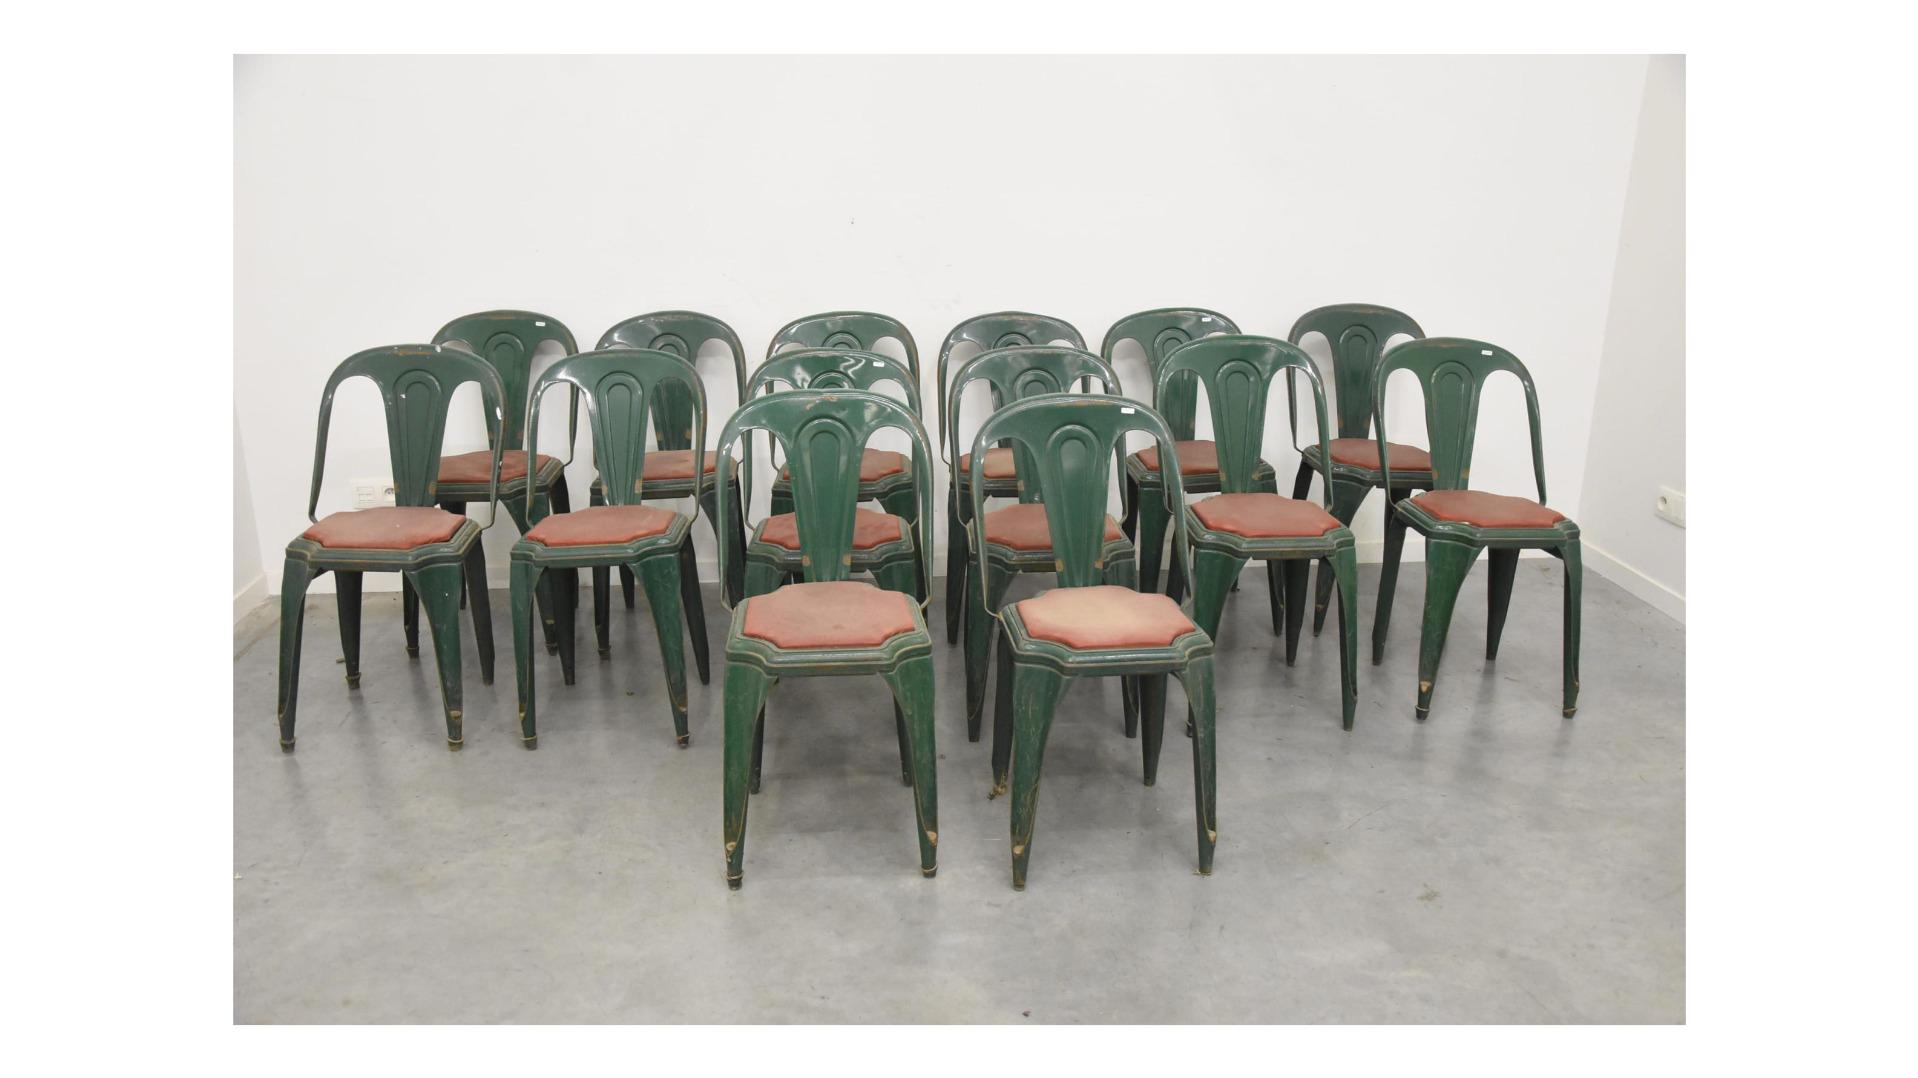 Suite de 14 chaises industrielles de la marque fibrocit, circa 1950 
Usure normale, éraflures, absence de pelures, petites taches de rouille superficielles.